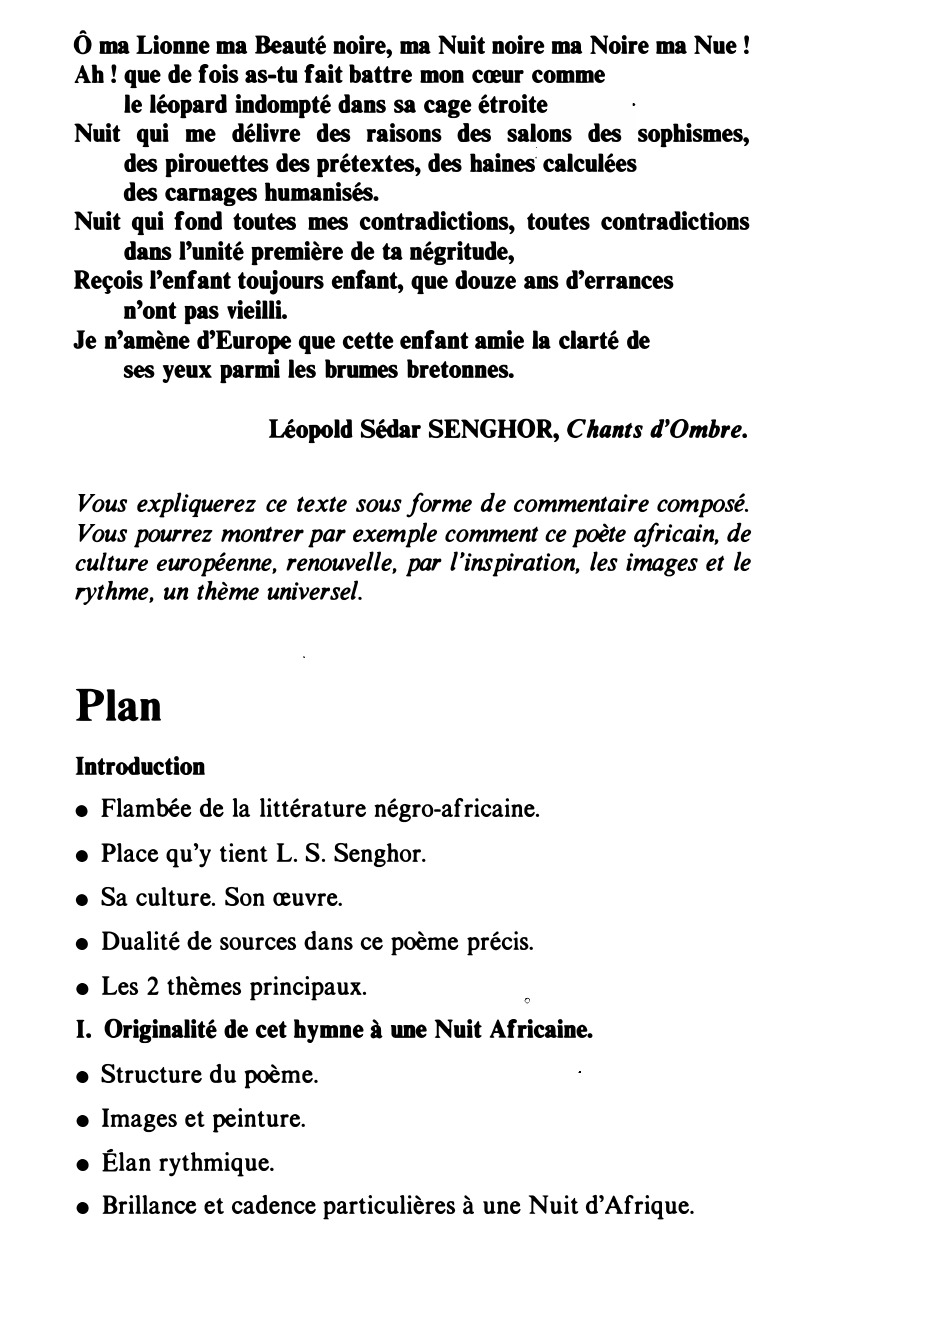 Prévisualisation du document Nuit d’Afrique de Léopold Sédar SENGHOR, Chants d’Ombre (commentaire composé)